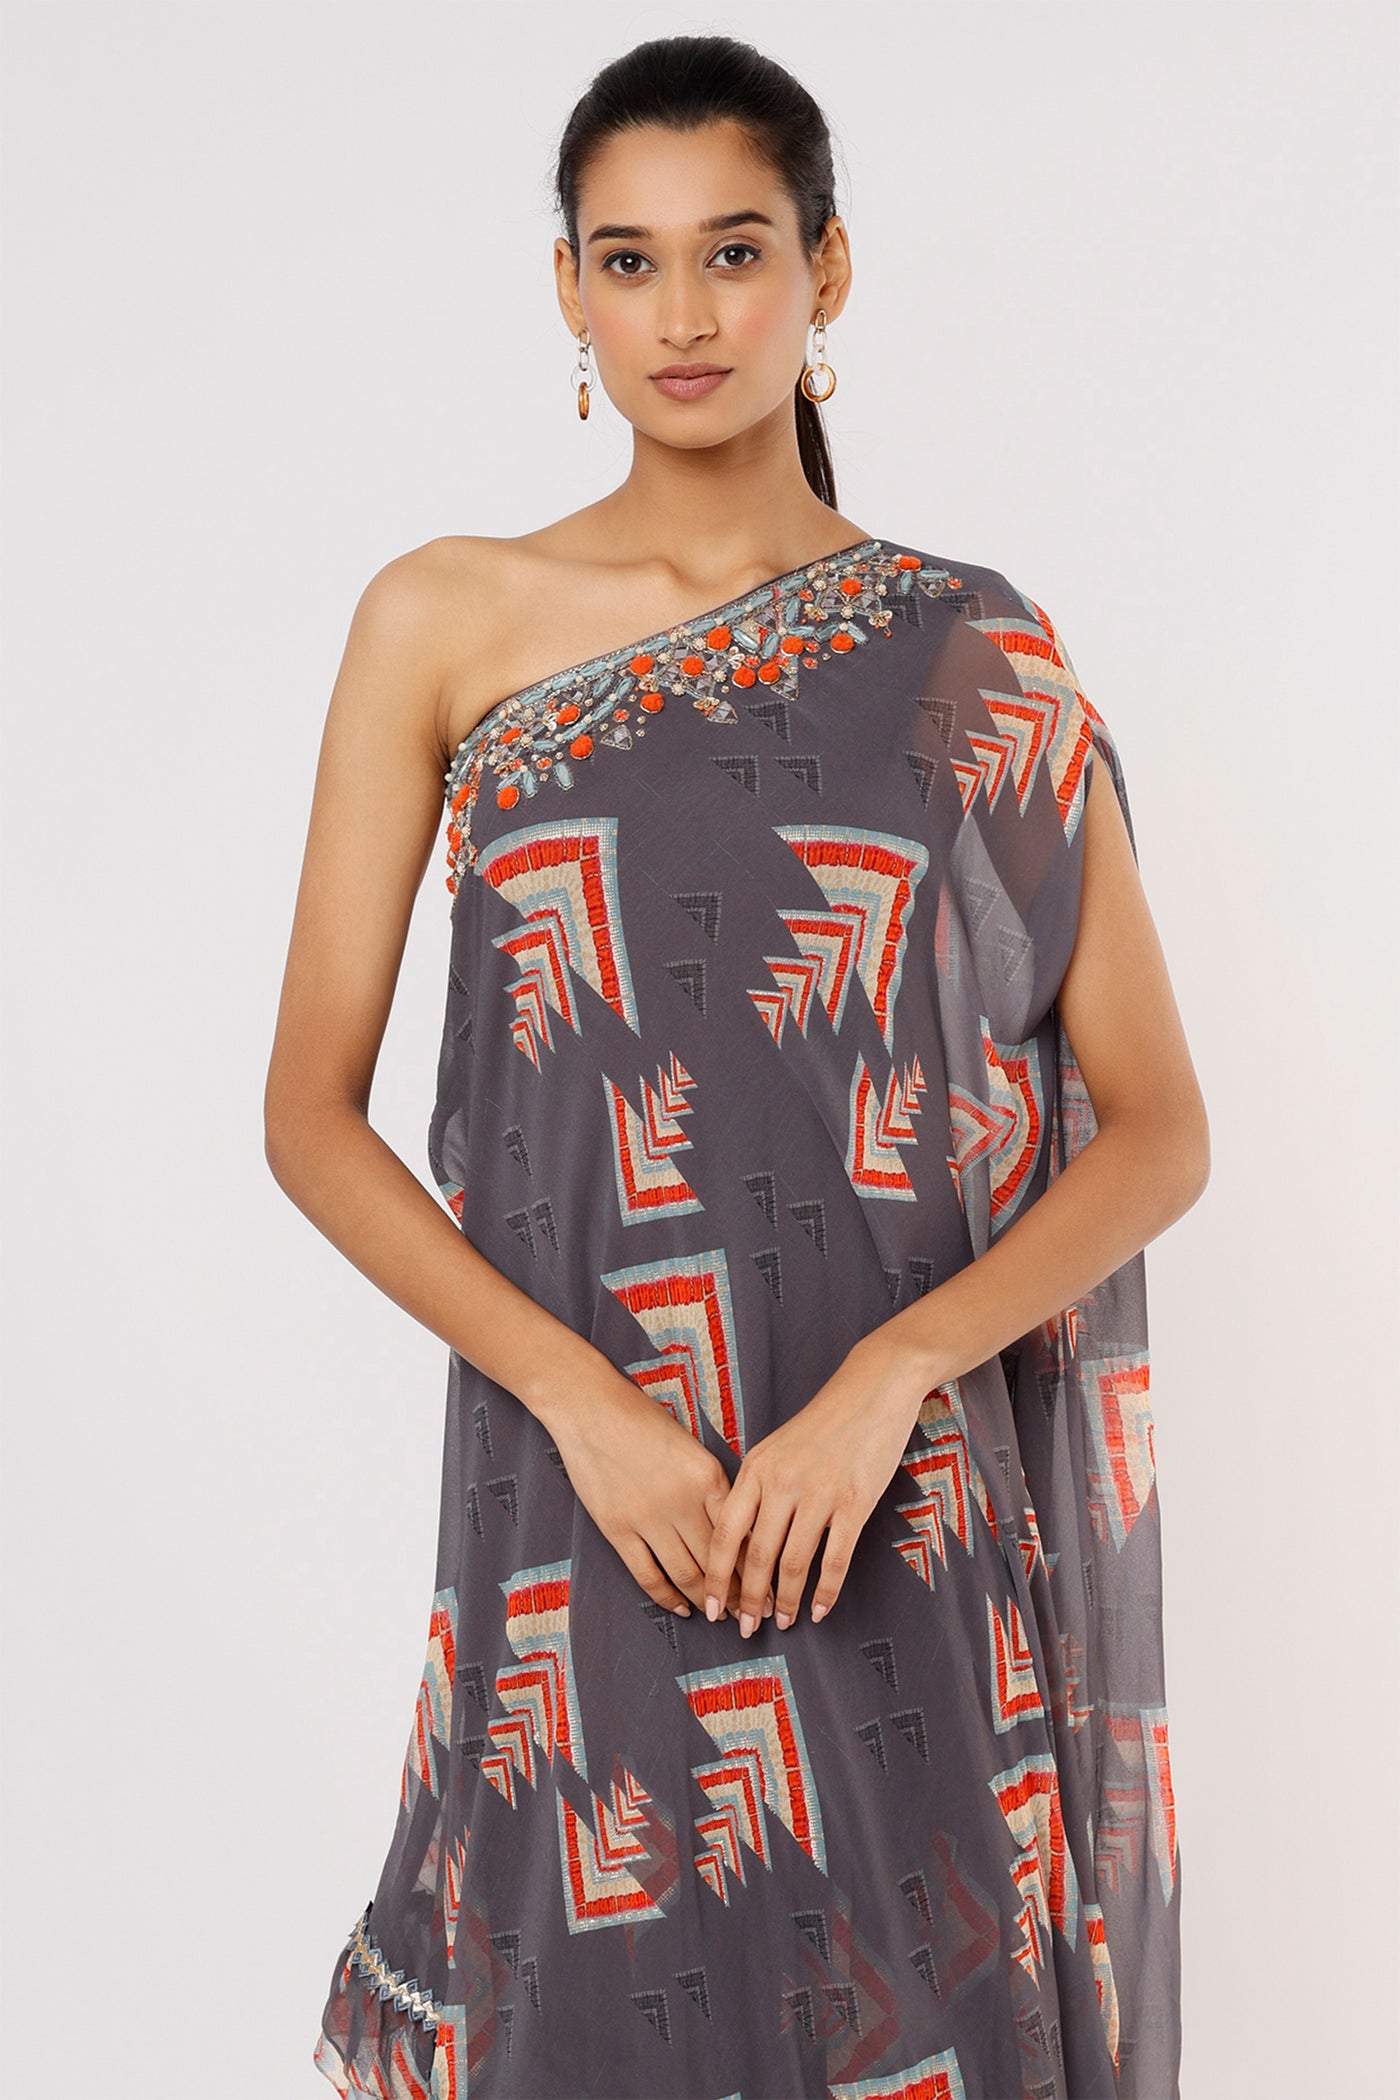 Gopi vaid Daphne One Shoulder Gown grey festive Indian designer wear online shopping melange singapore